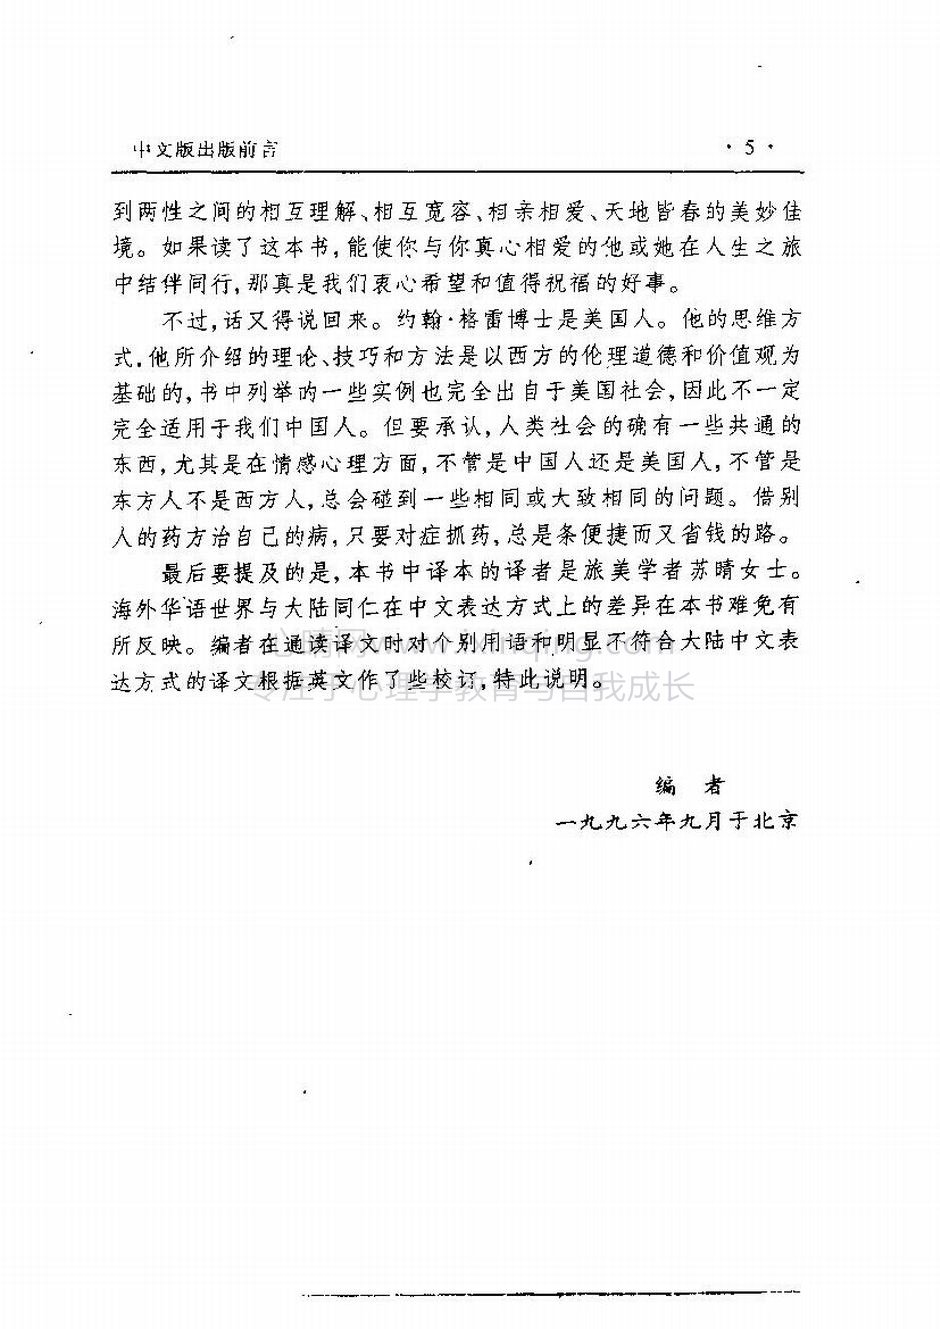 封面、原序、译序、中文版出版前言(9)